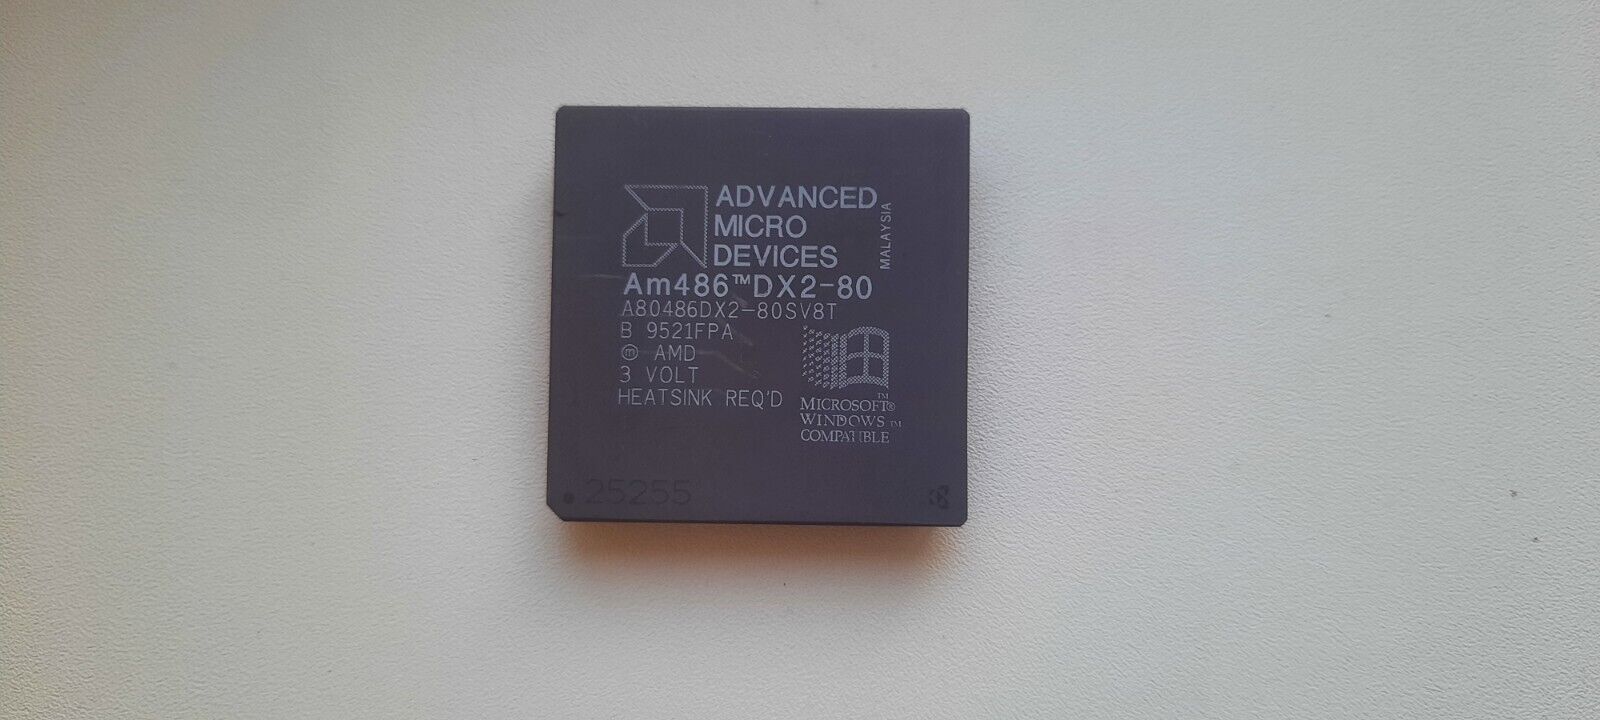 AMD Am486 DX2 80 very rare SV8T  A80486DX2-80 SV8T vintage CPU GOLD